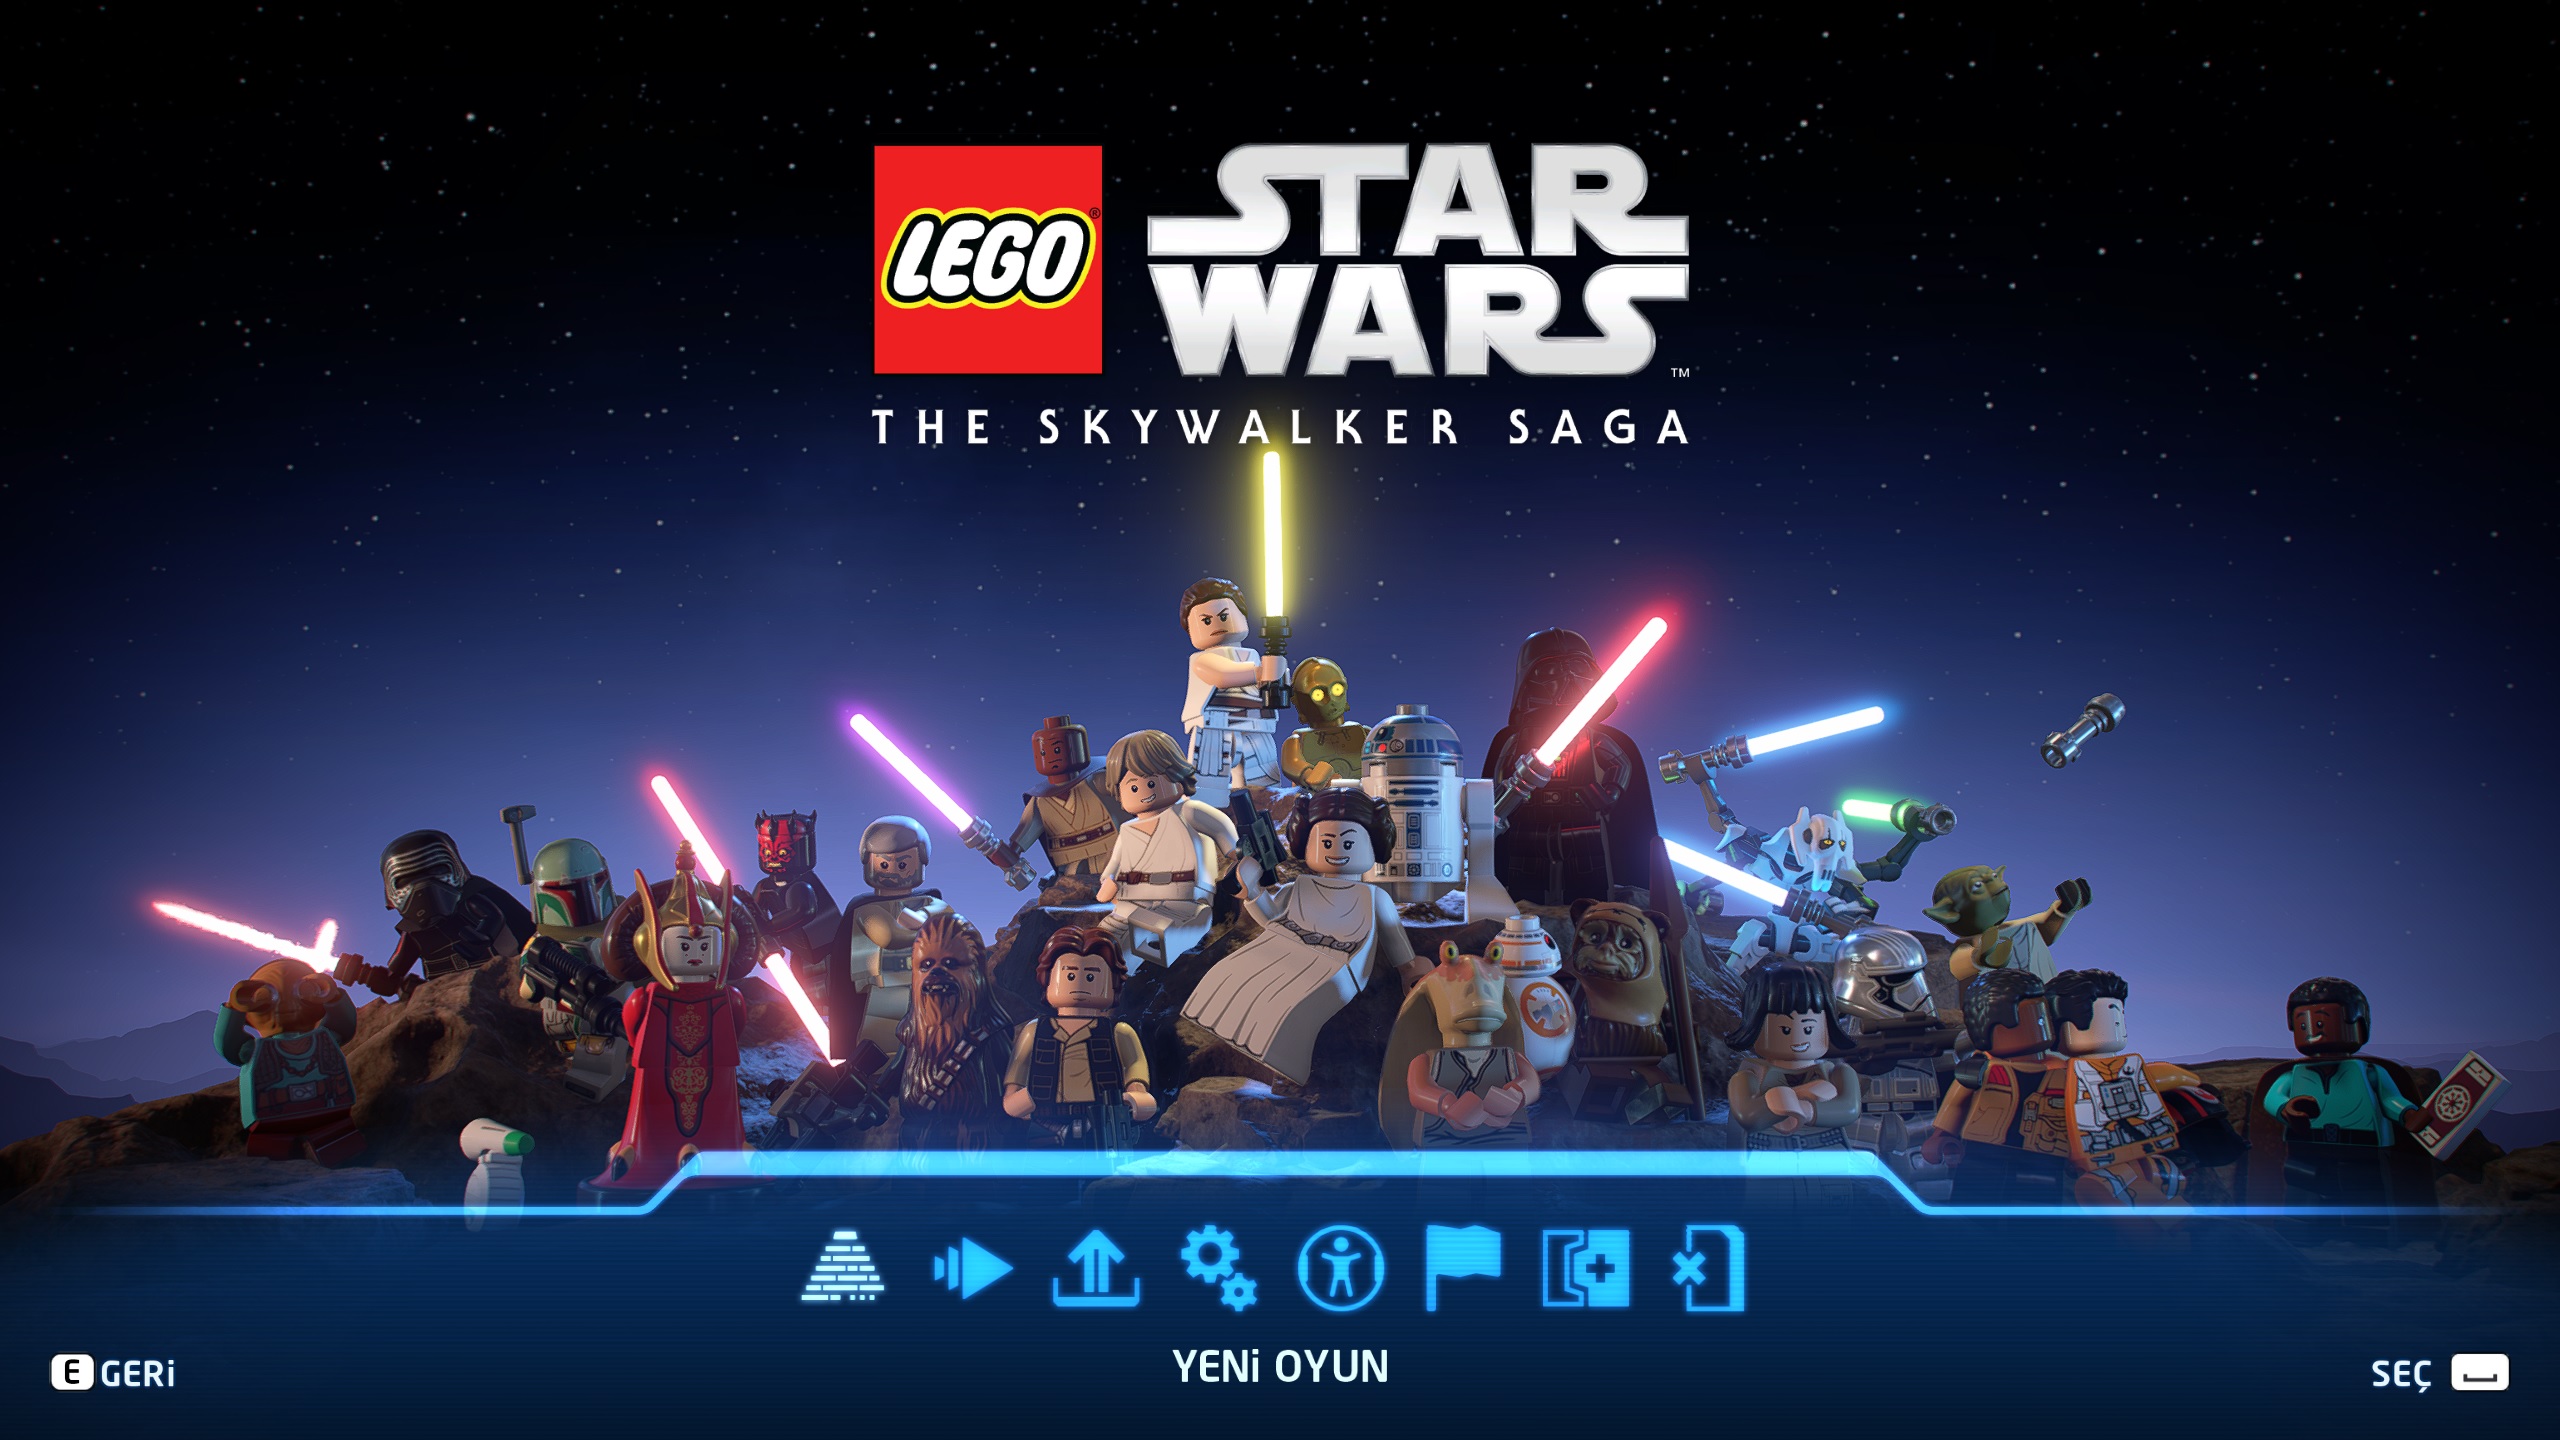 lego star wars the skywalker saga Türkçe yama yapar mısınız?